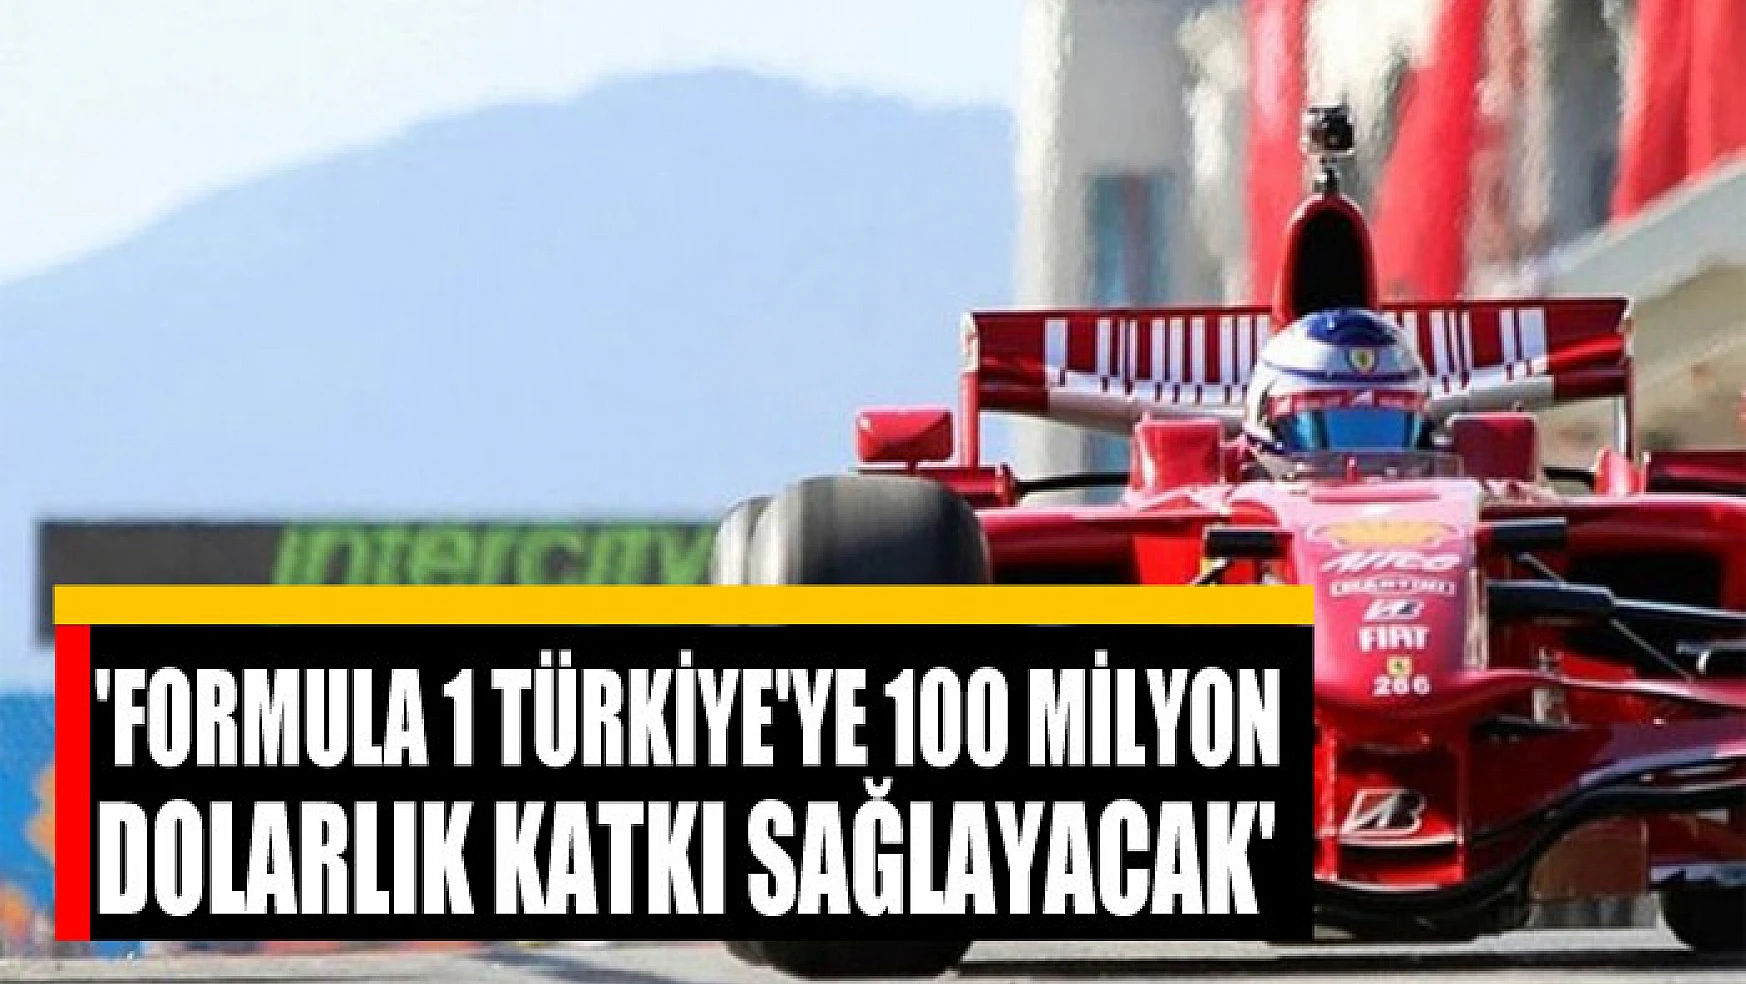 'Formula 1 Türkiye'ye 100 milyon dolarlık katkı sağlayacak'